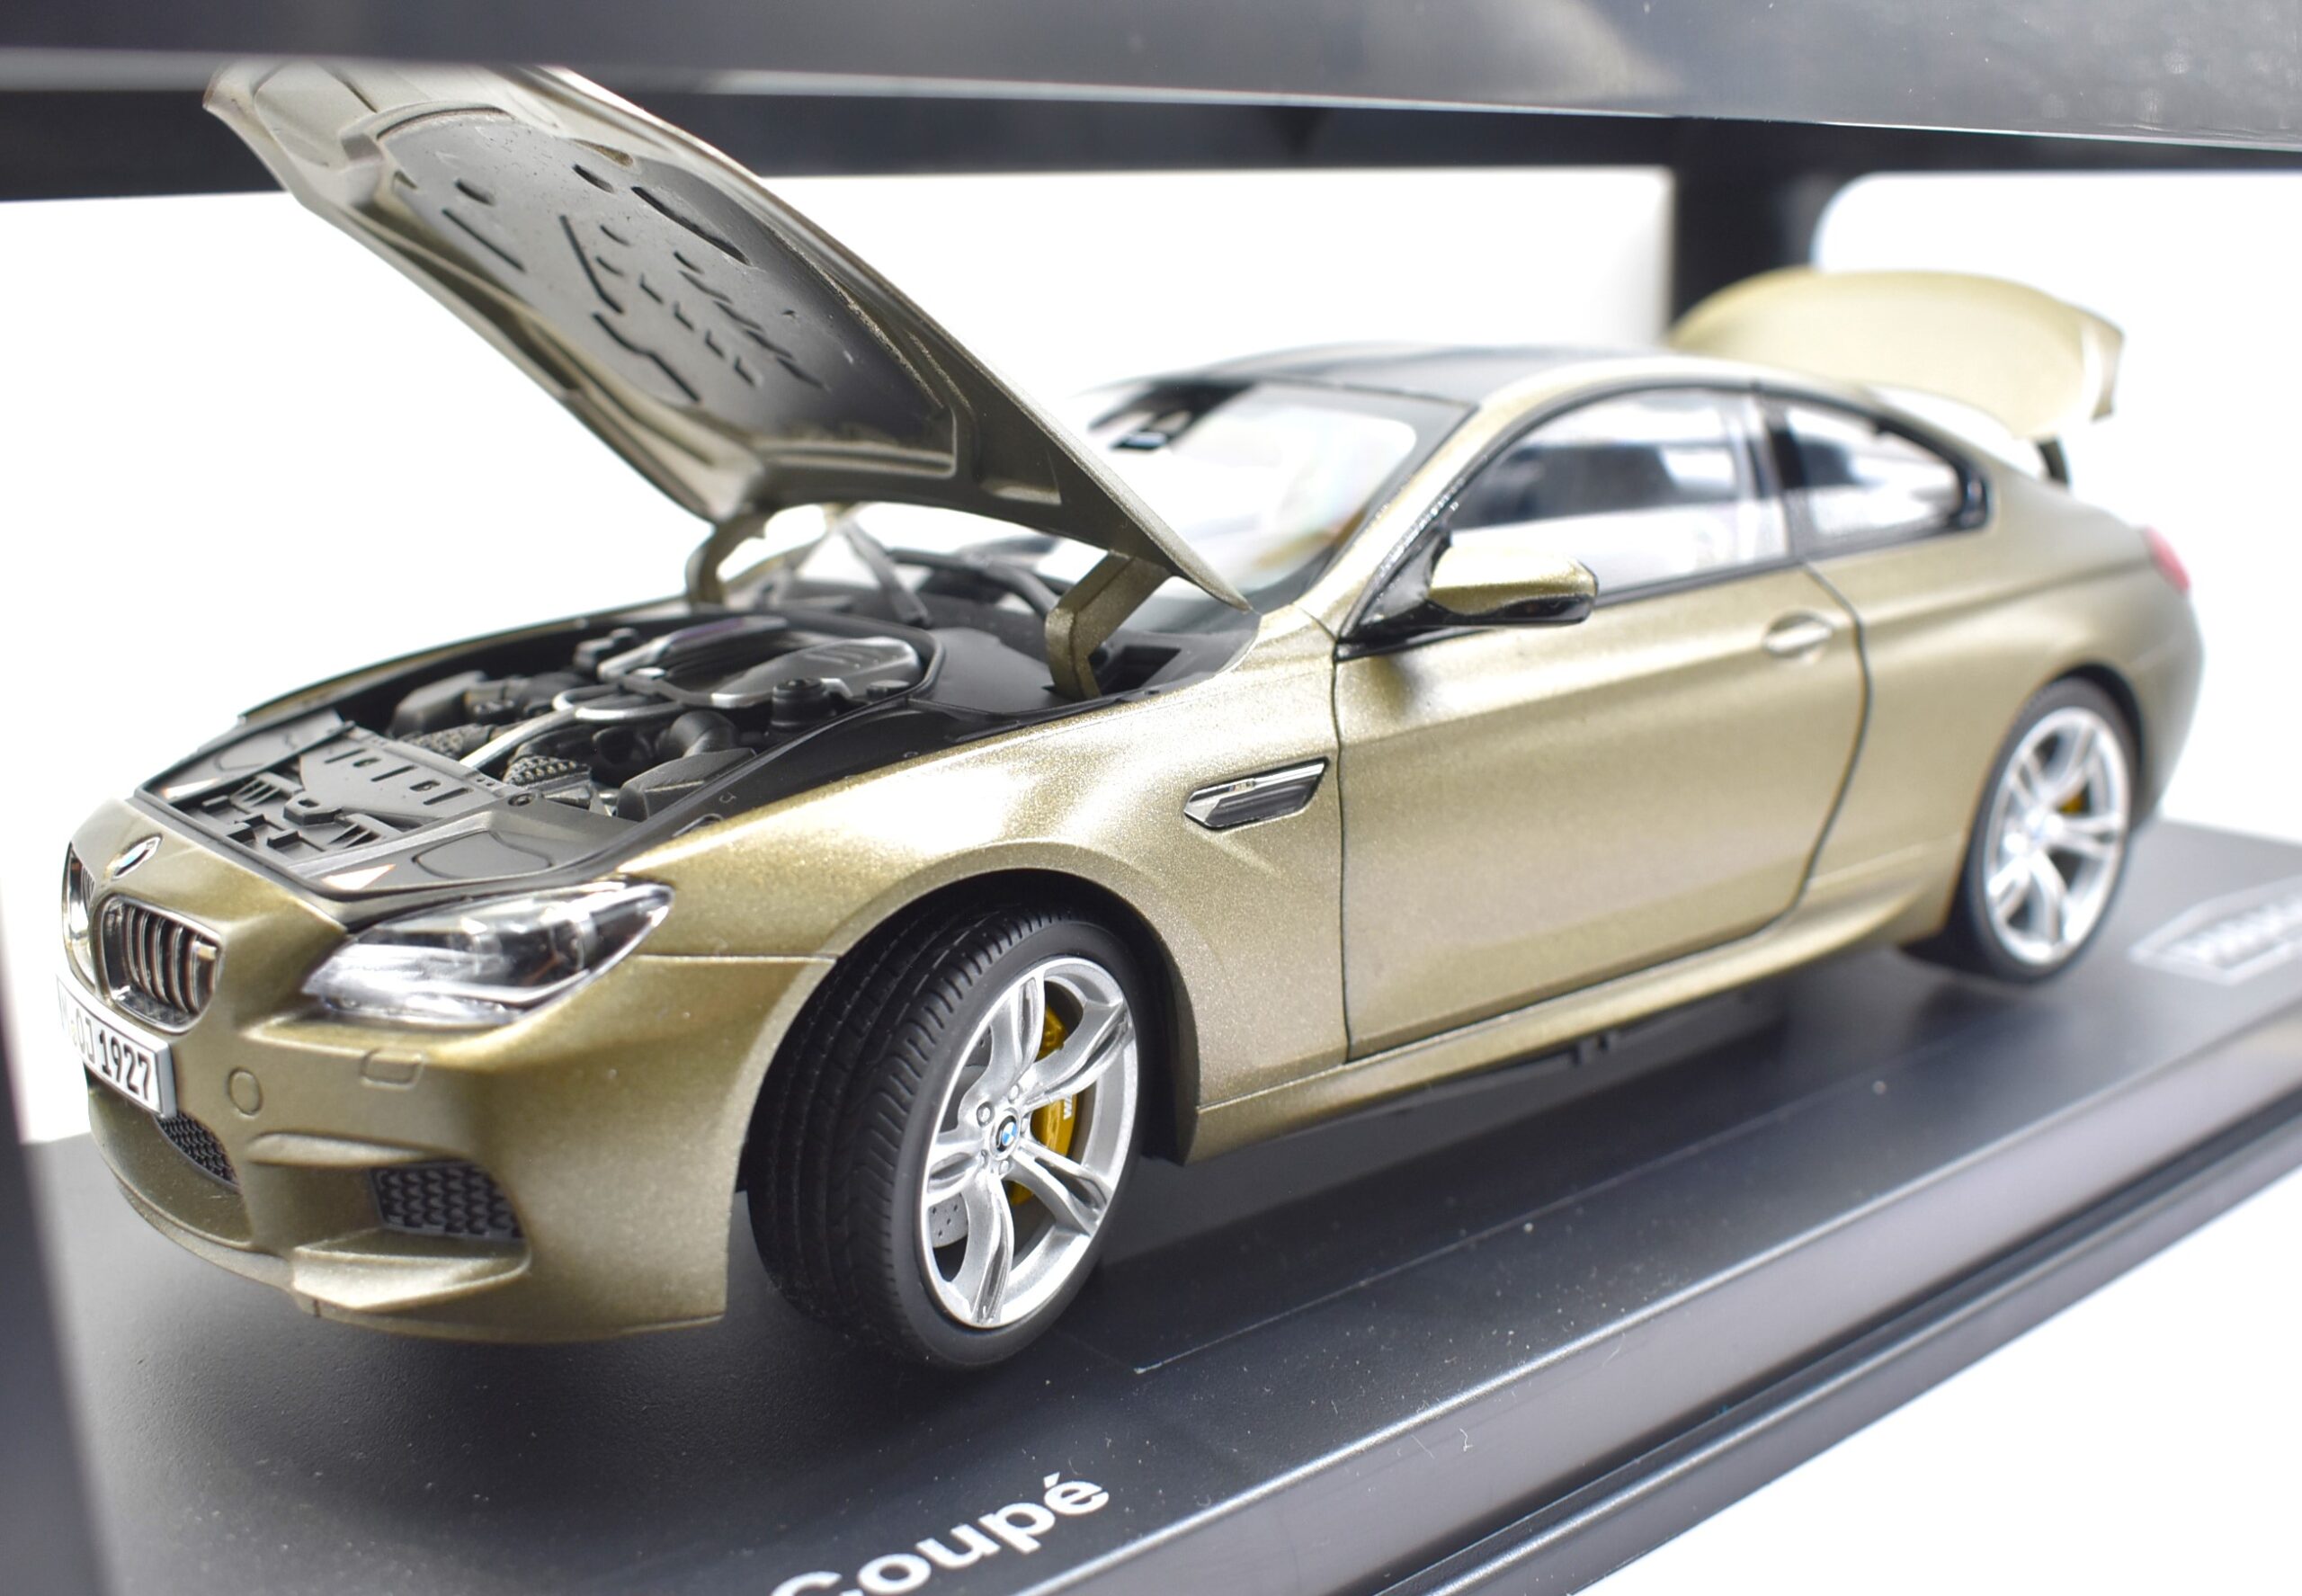 modellauto Modellauto BMW M6 Coupé Paragon im Maßstab 1:18 diecastmodellbau aussammlung